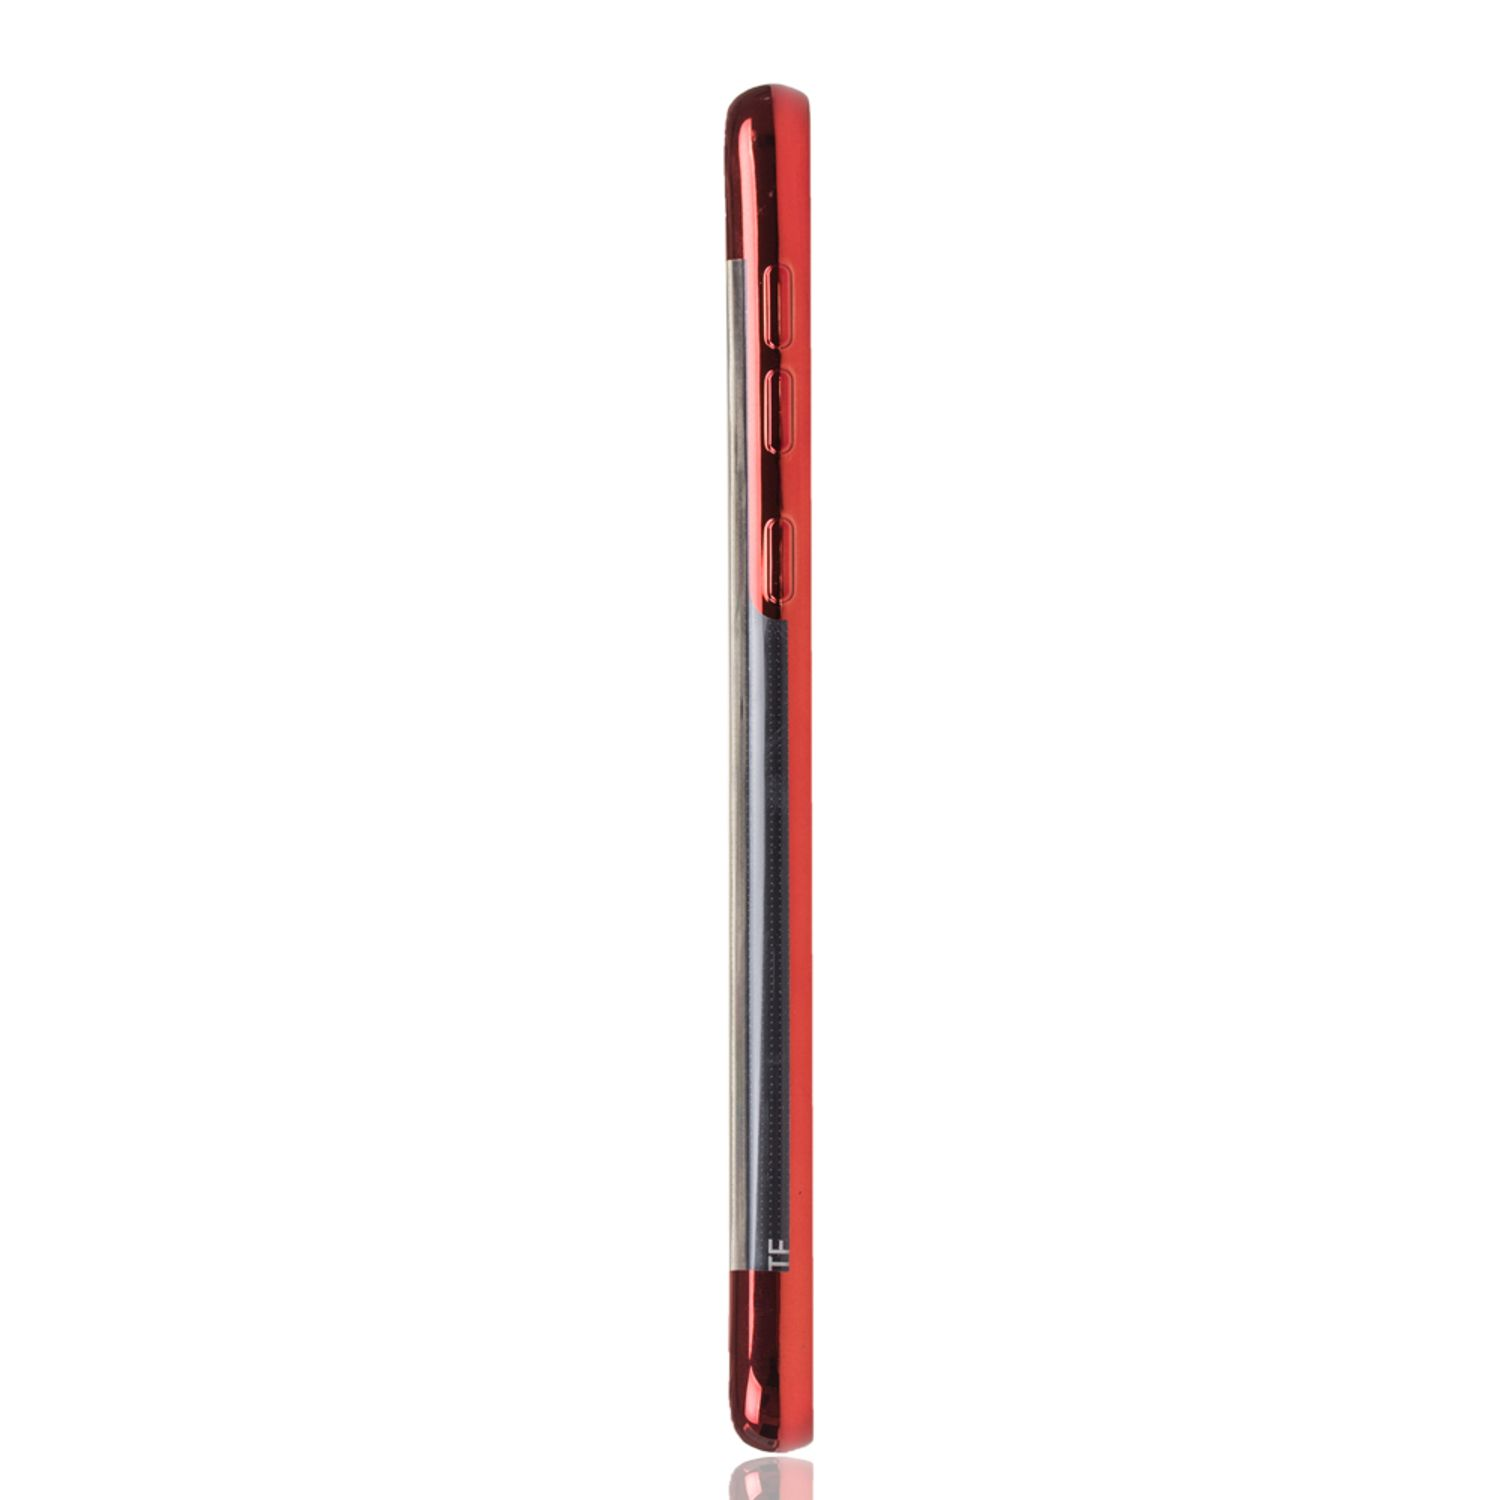 Galaxy Rot DESIGN Backcover, Samsung, KÖNIG S10e, Schutzhülle,